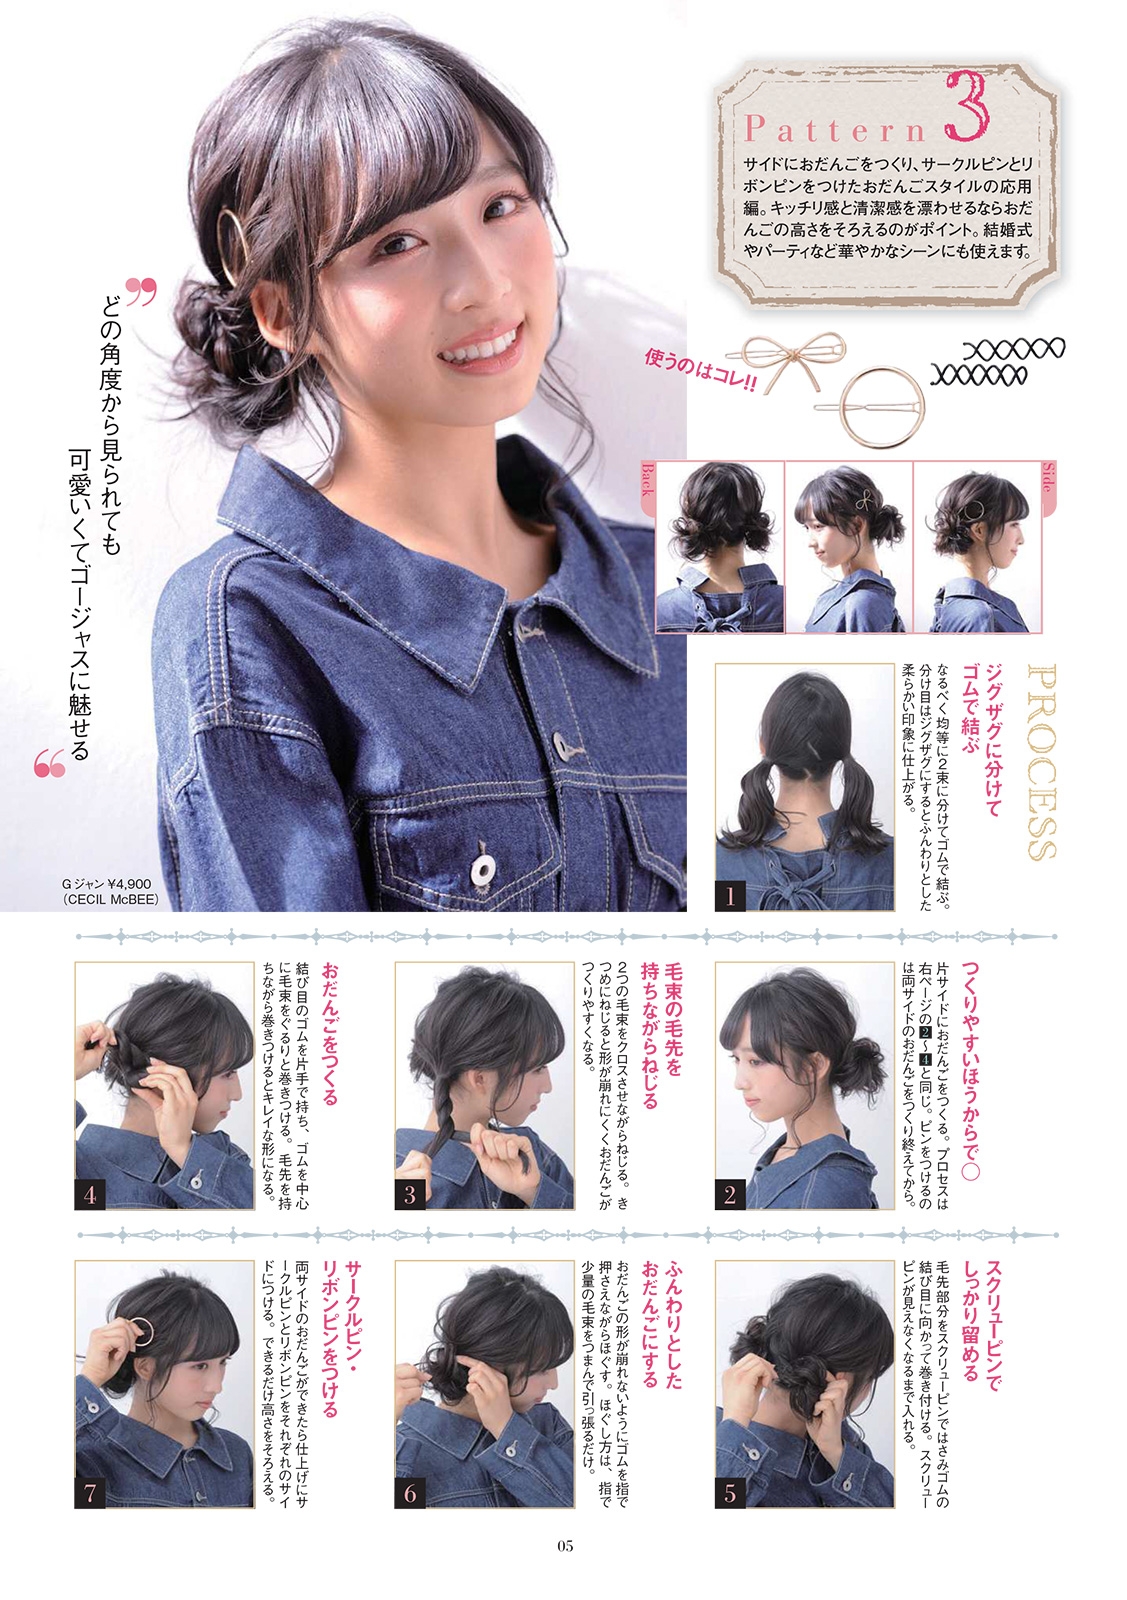 9月25日(火)発売、e-MOOK『簡単おしゃれなまとめ髪セット』の表紙